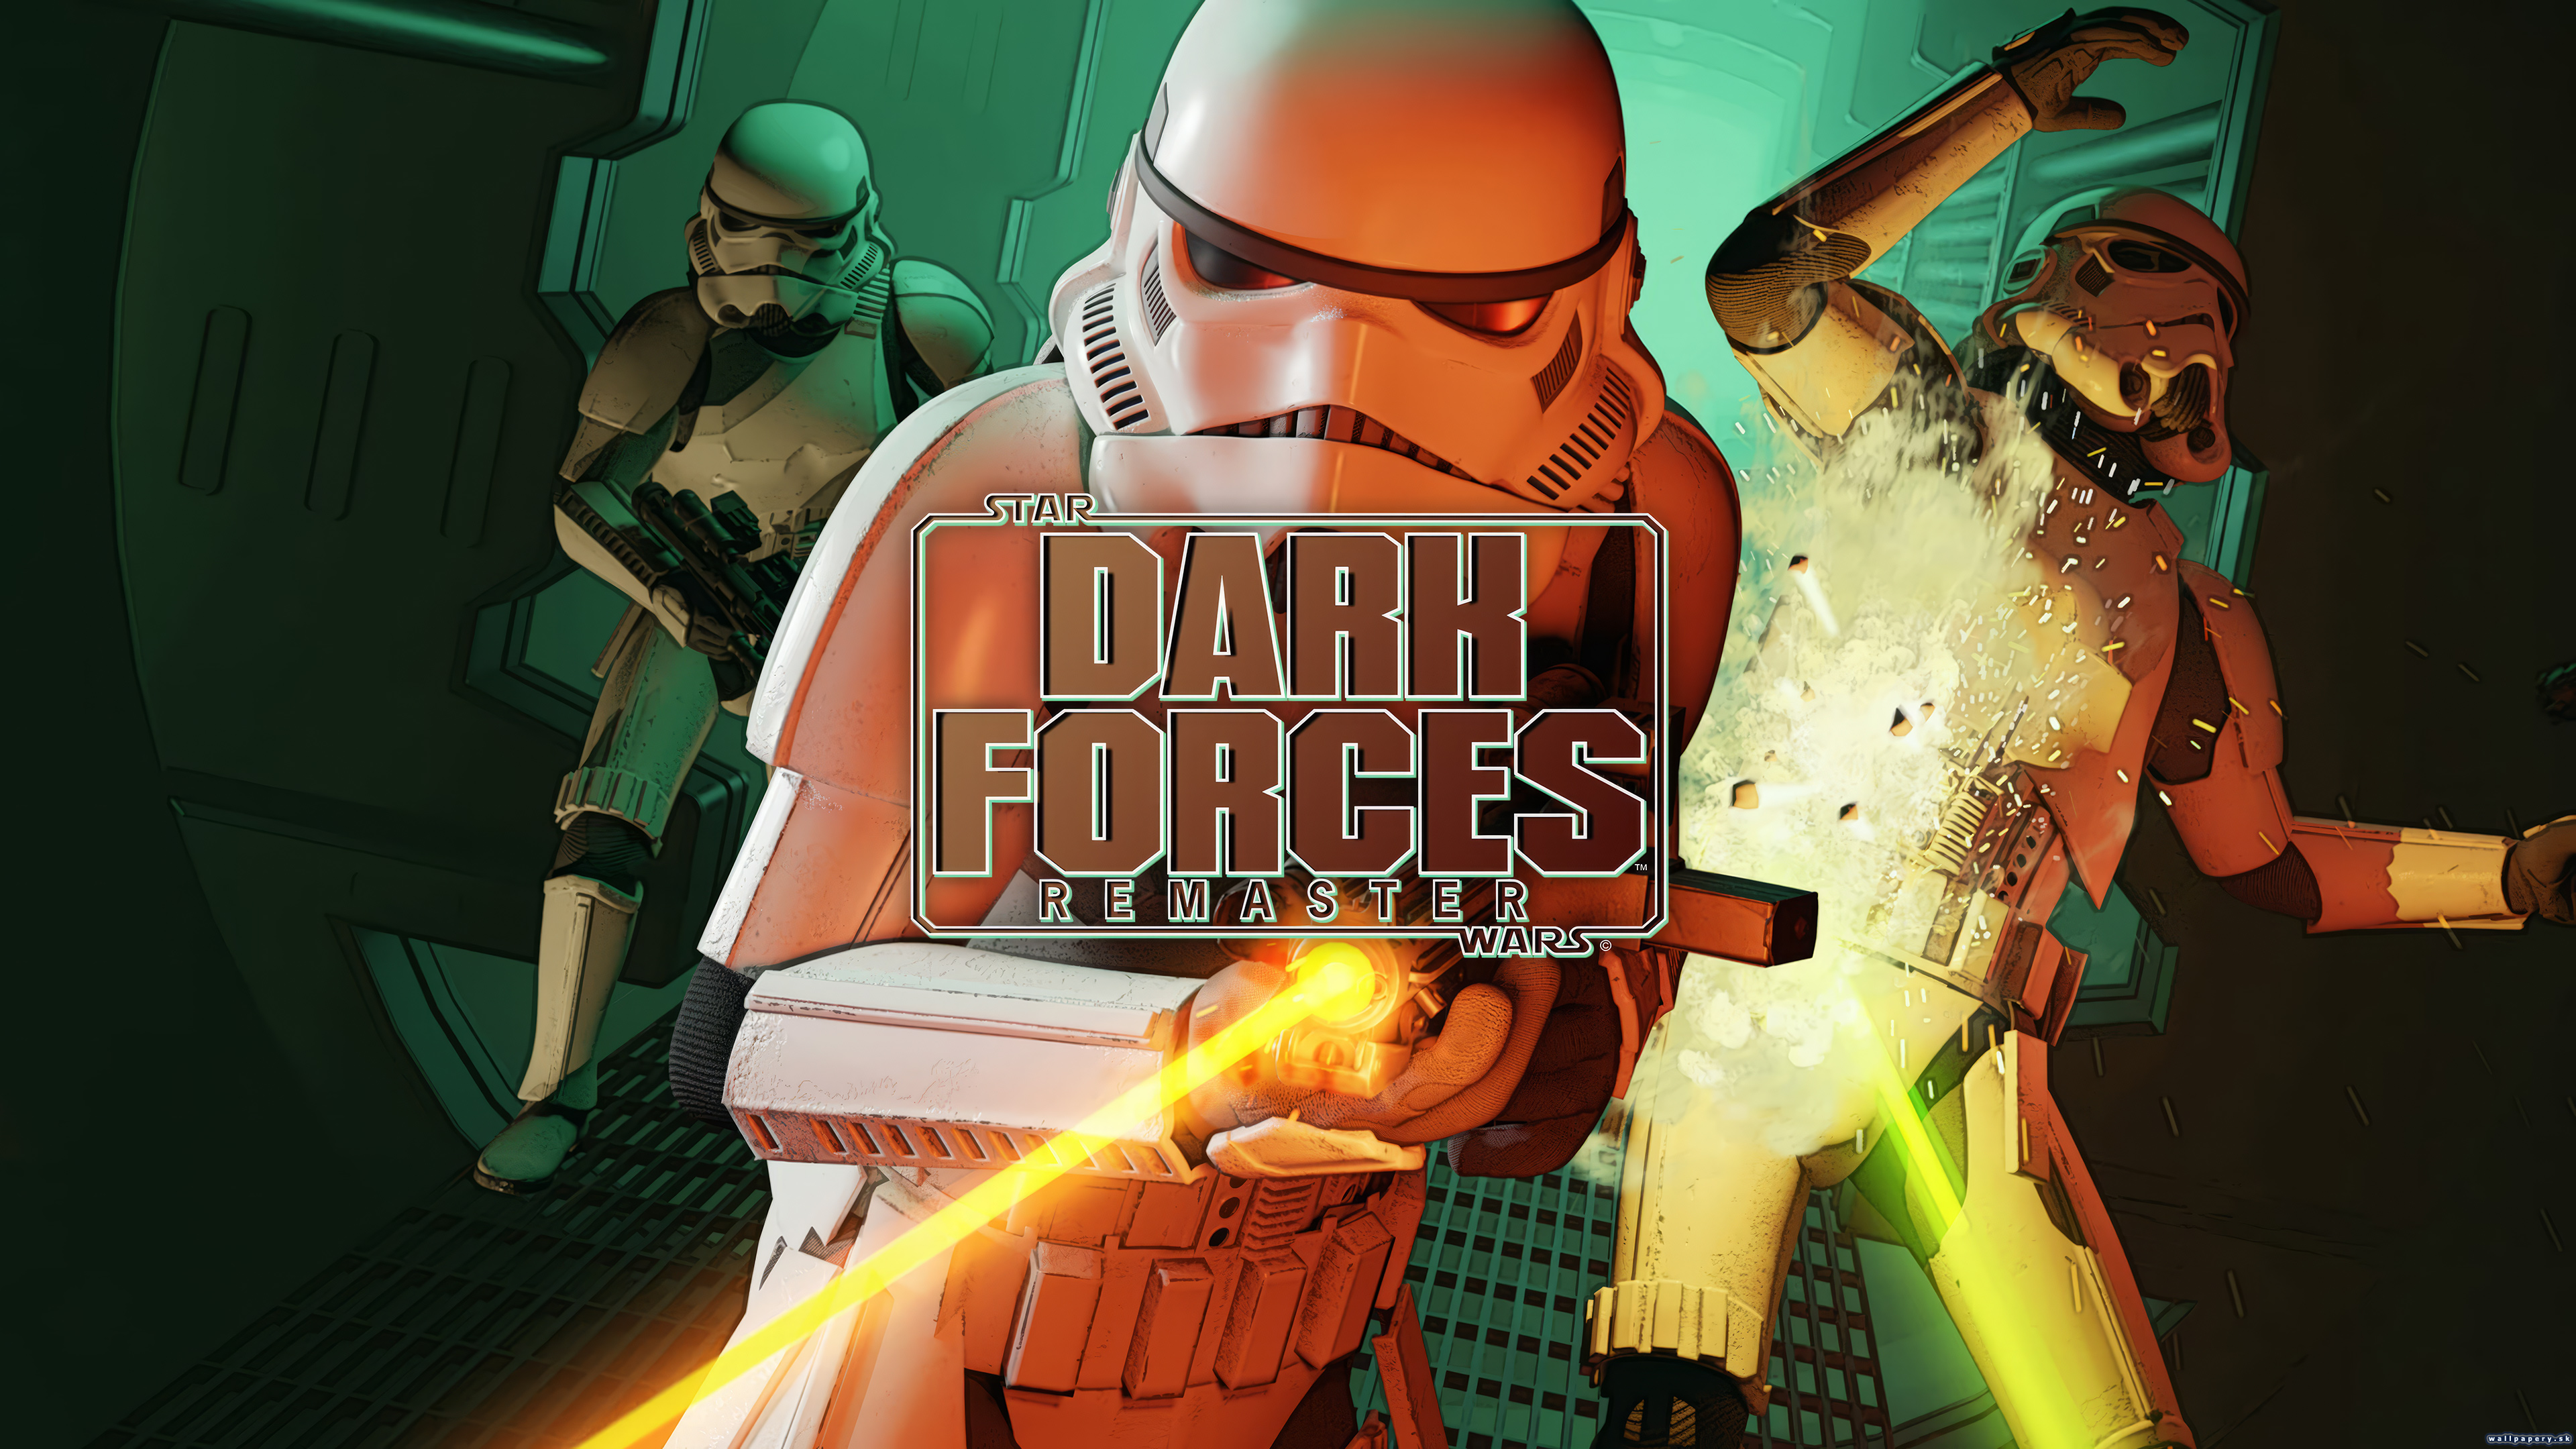 Star Wars: Dark Forces Remaster - wallpaper 1